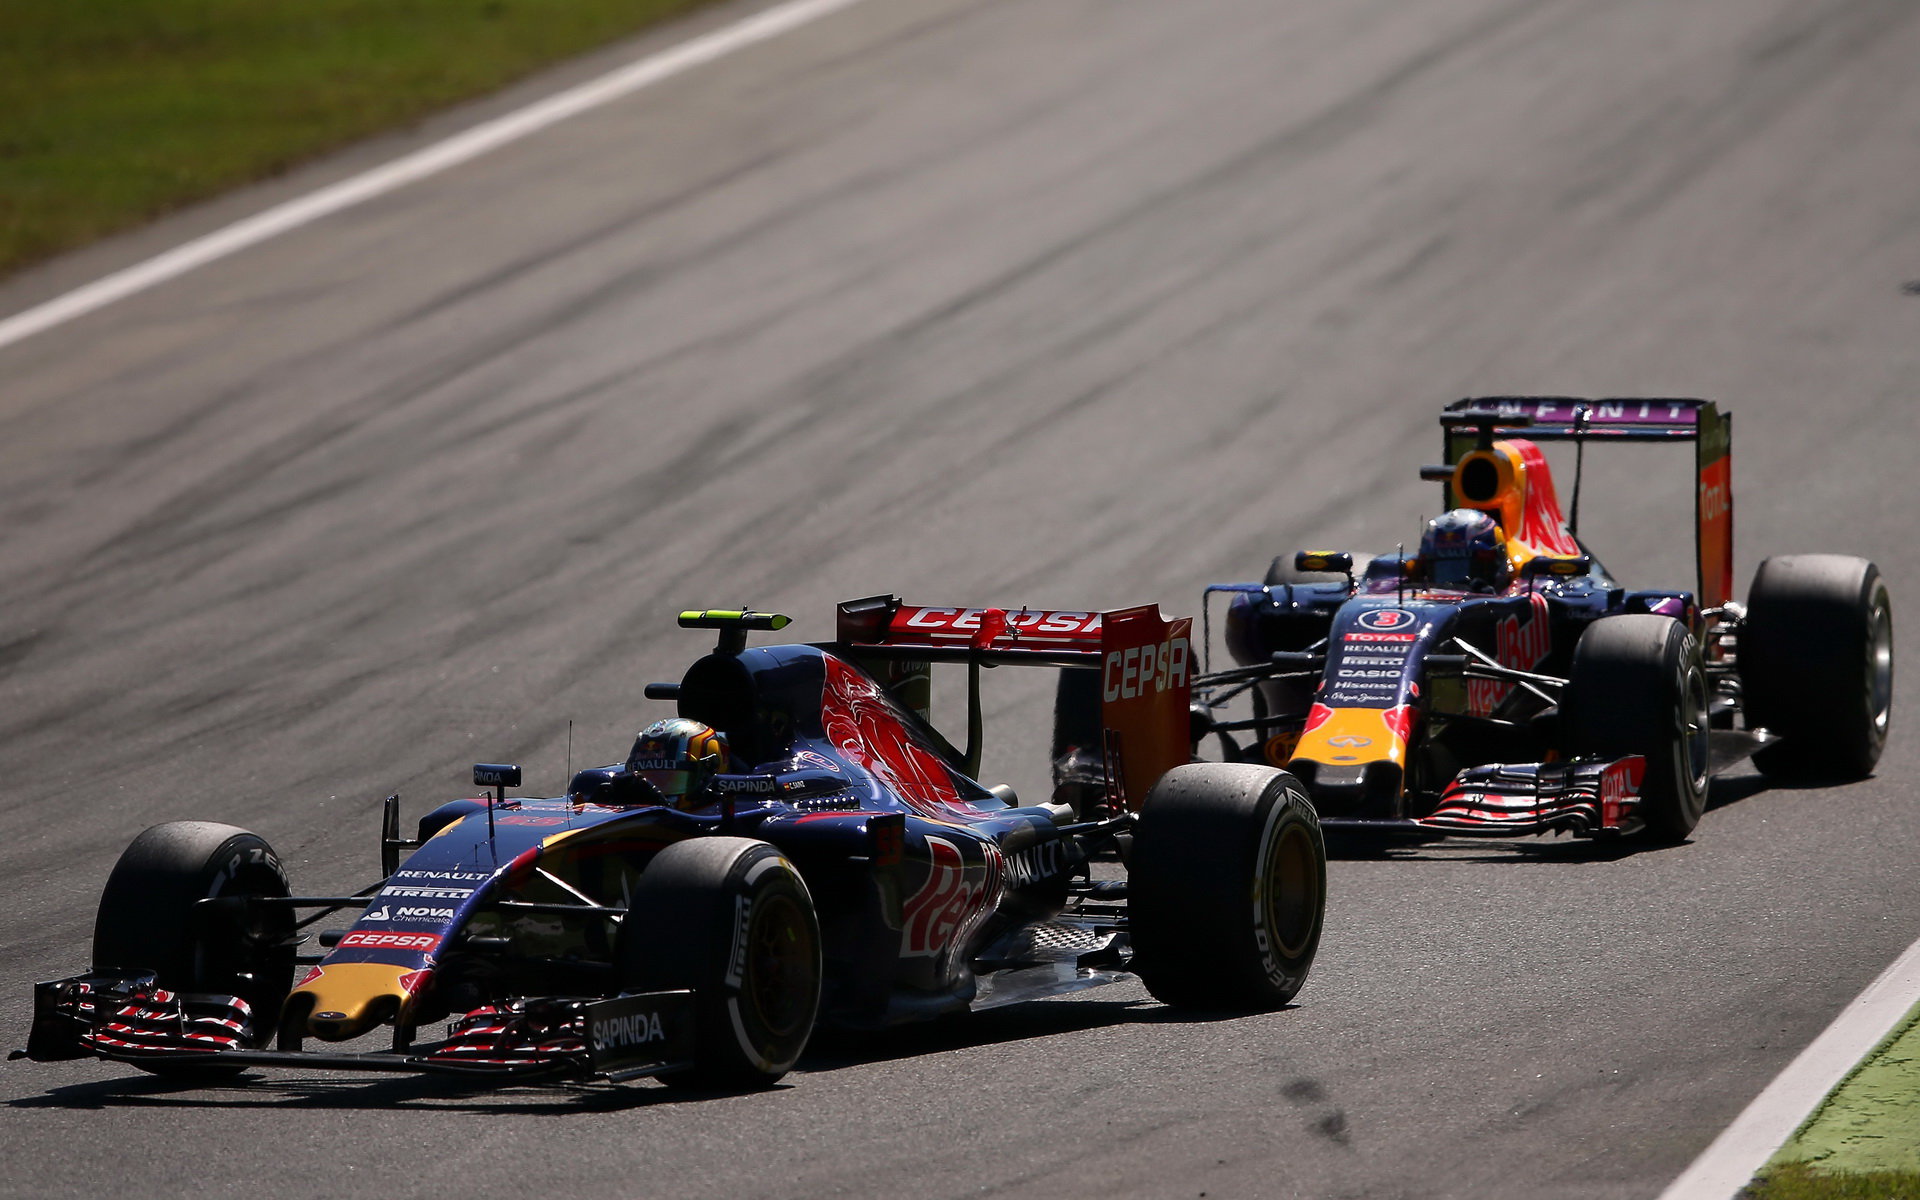 Budeme příští rok vídat Toro Rosso před Red Bullem?